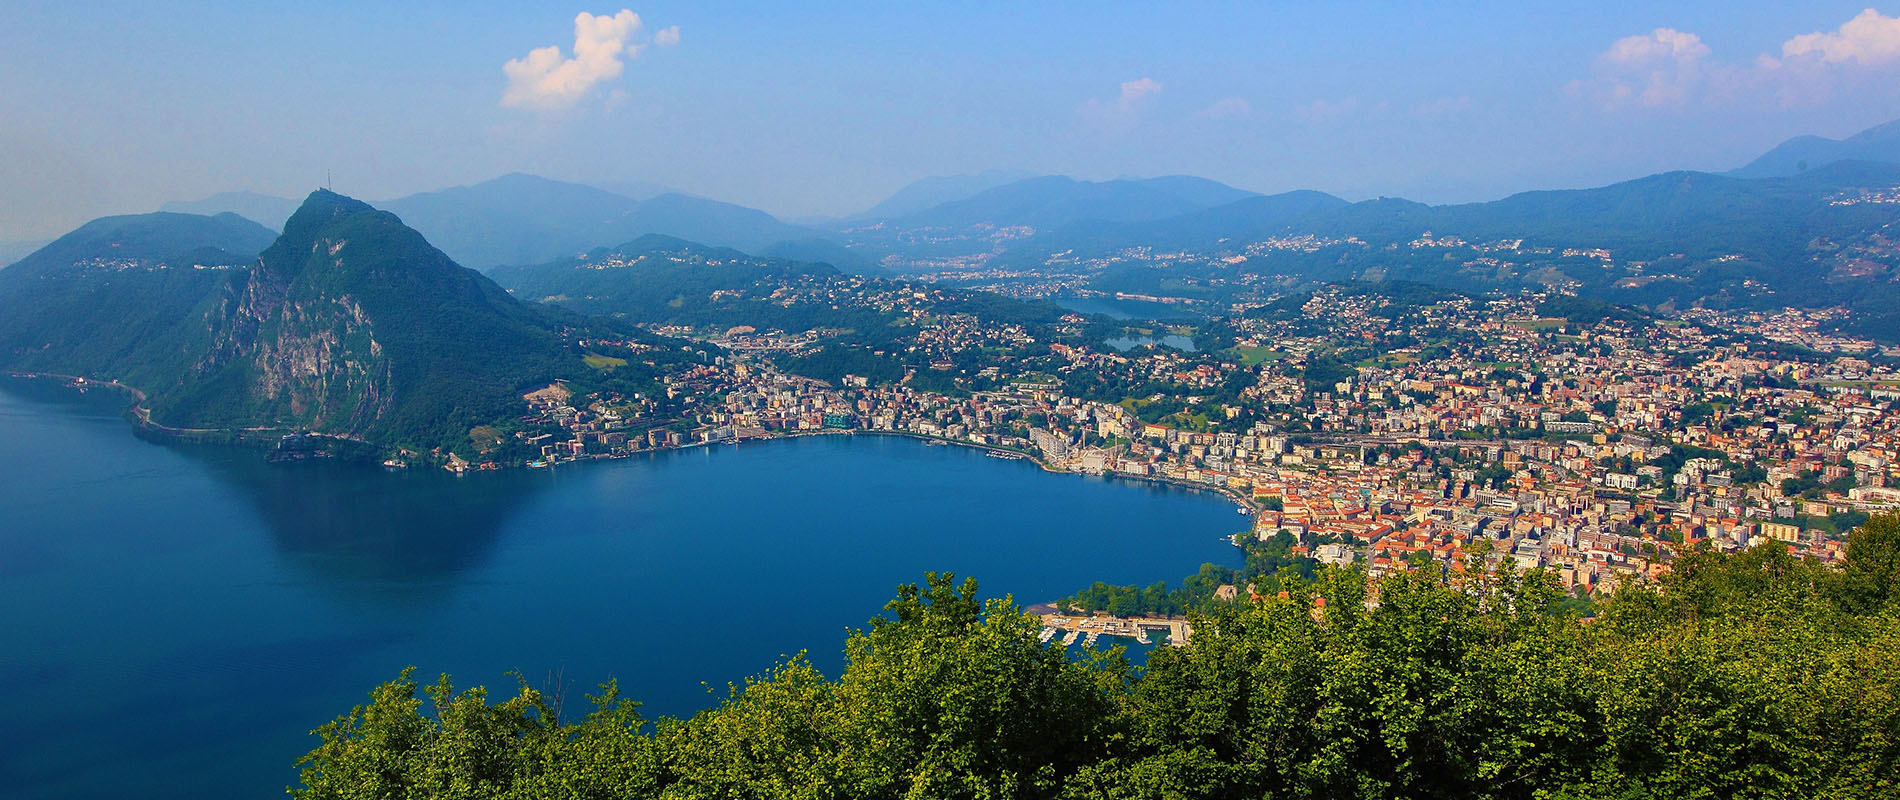 Lago Ceresio - Lugano